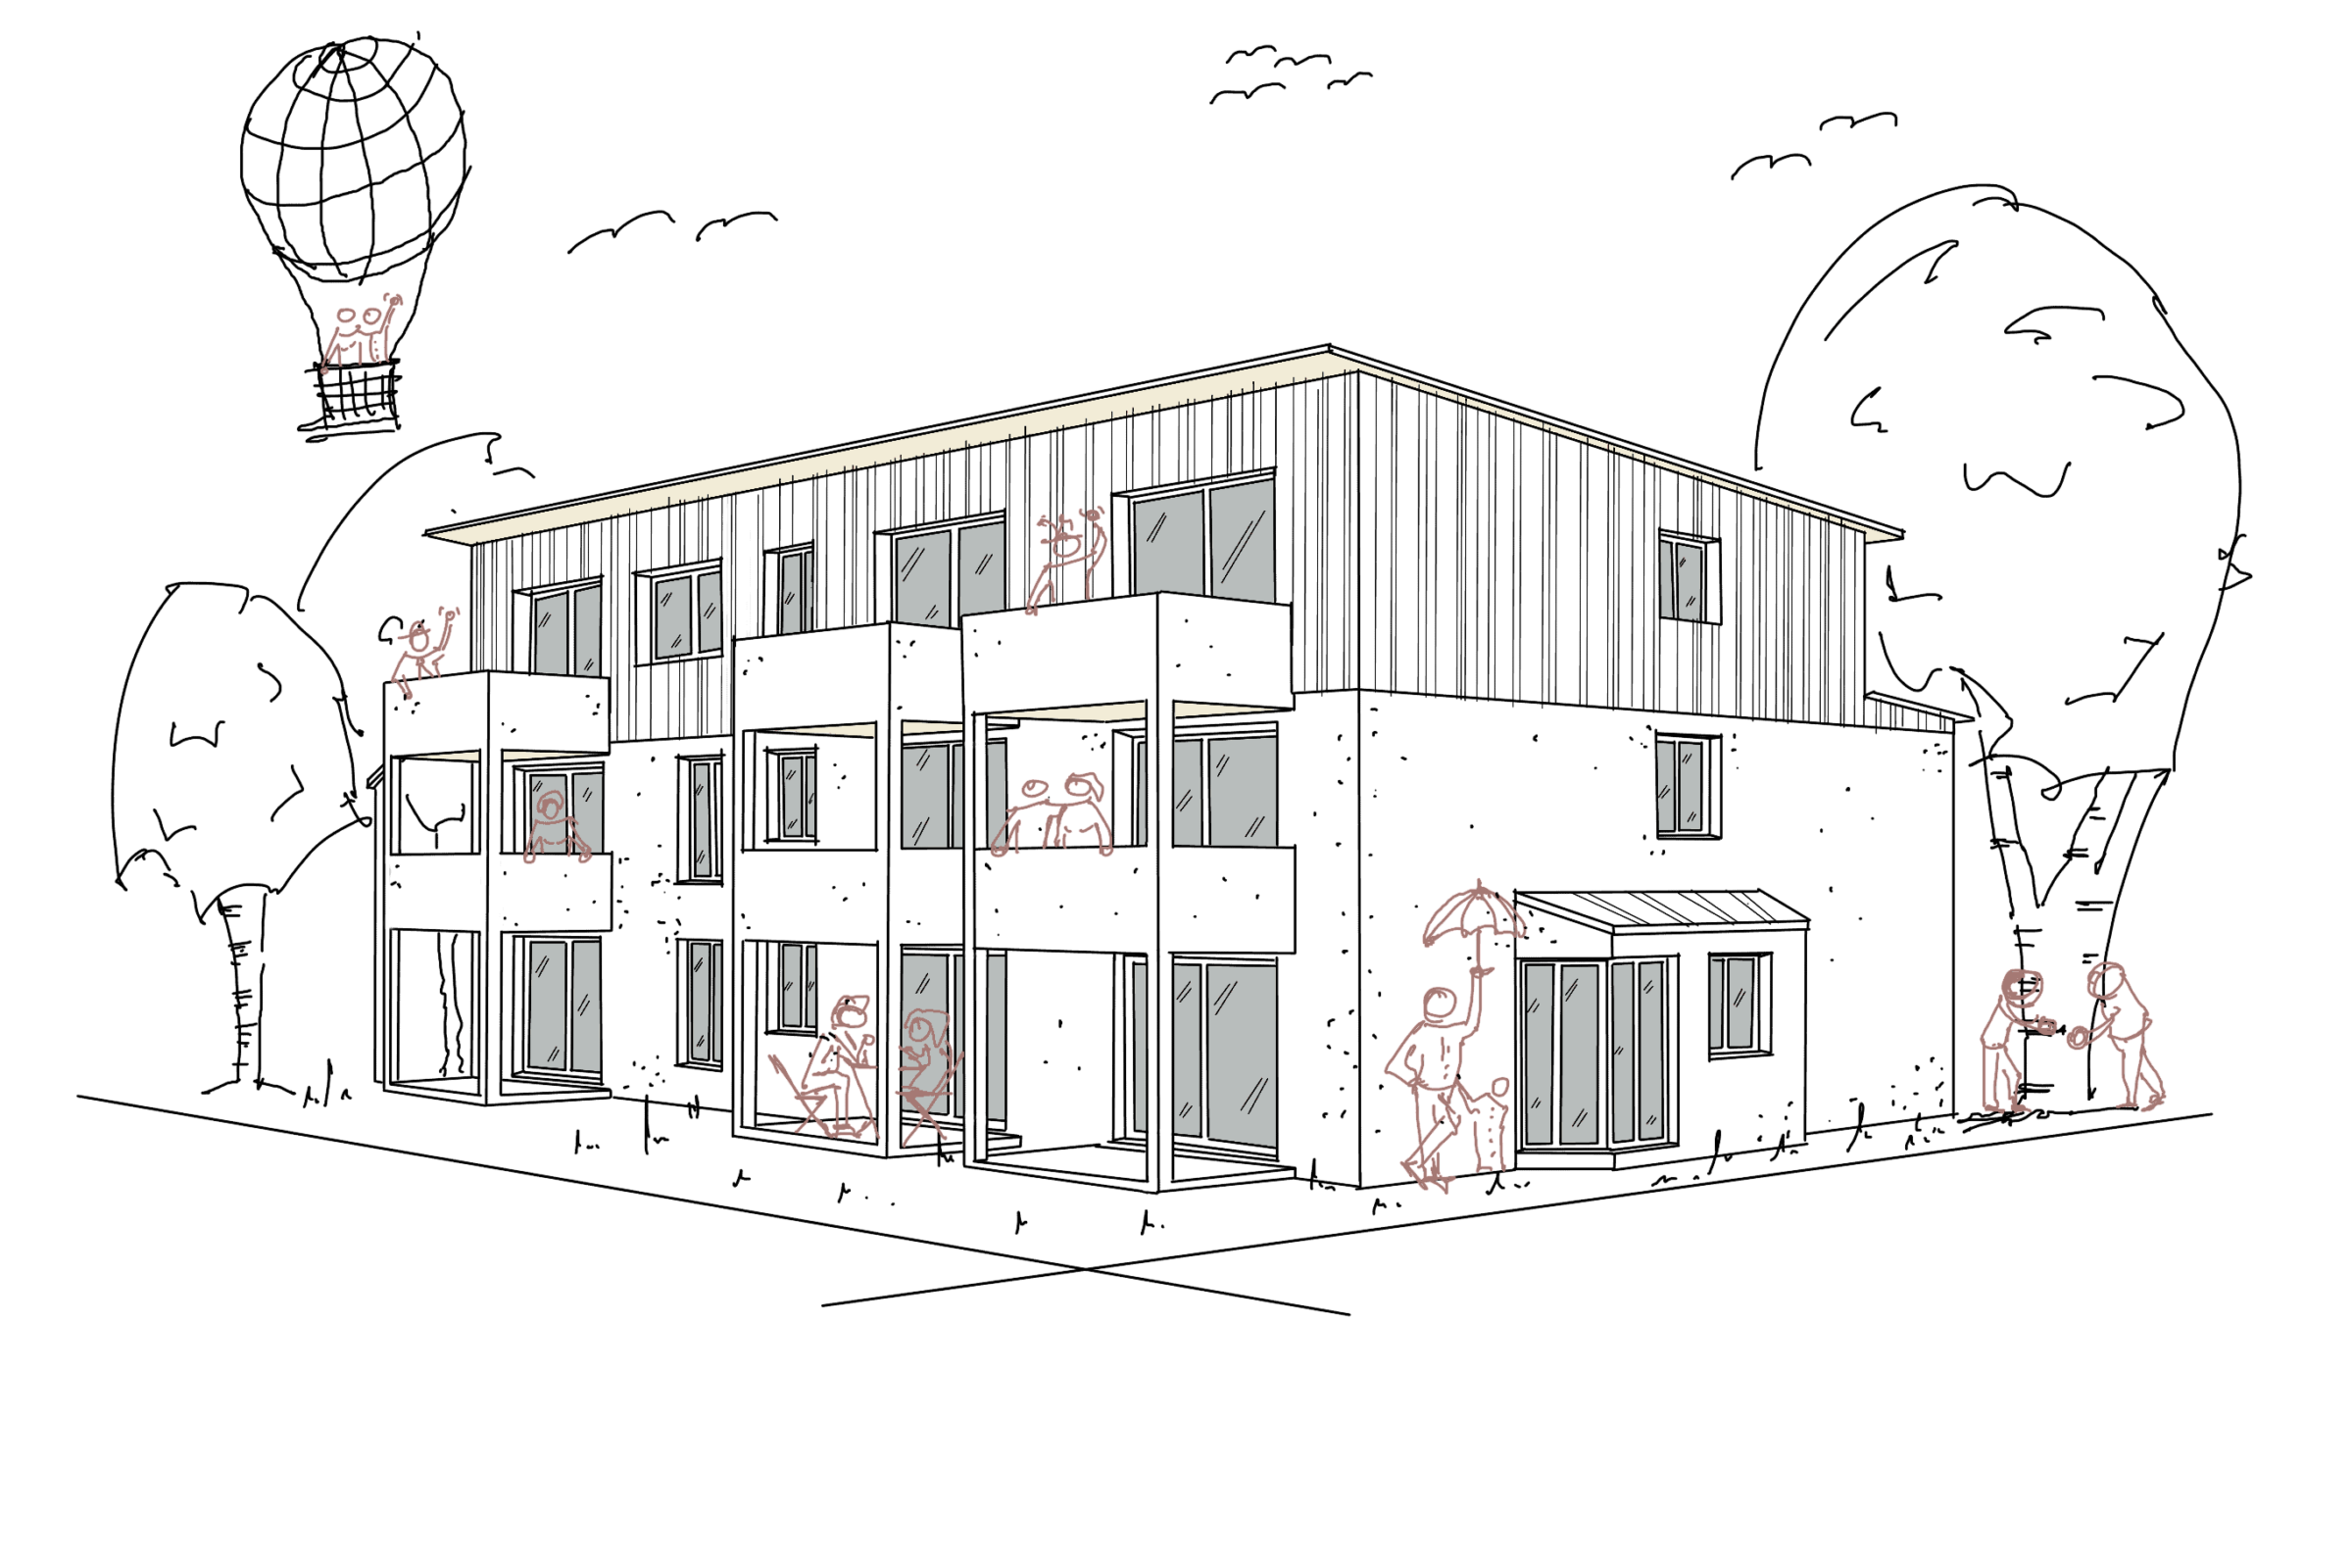 Handskizze eines Mehrparteienhauses mit mehreren Balkonen